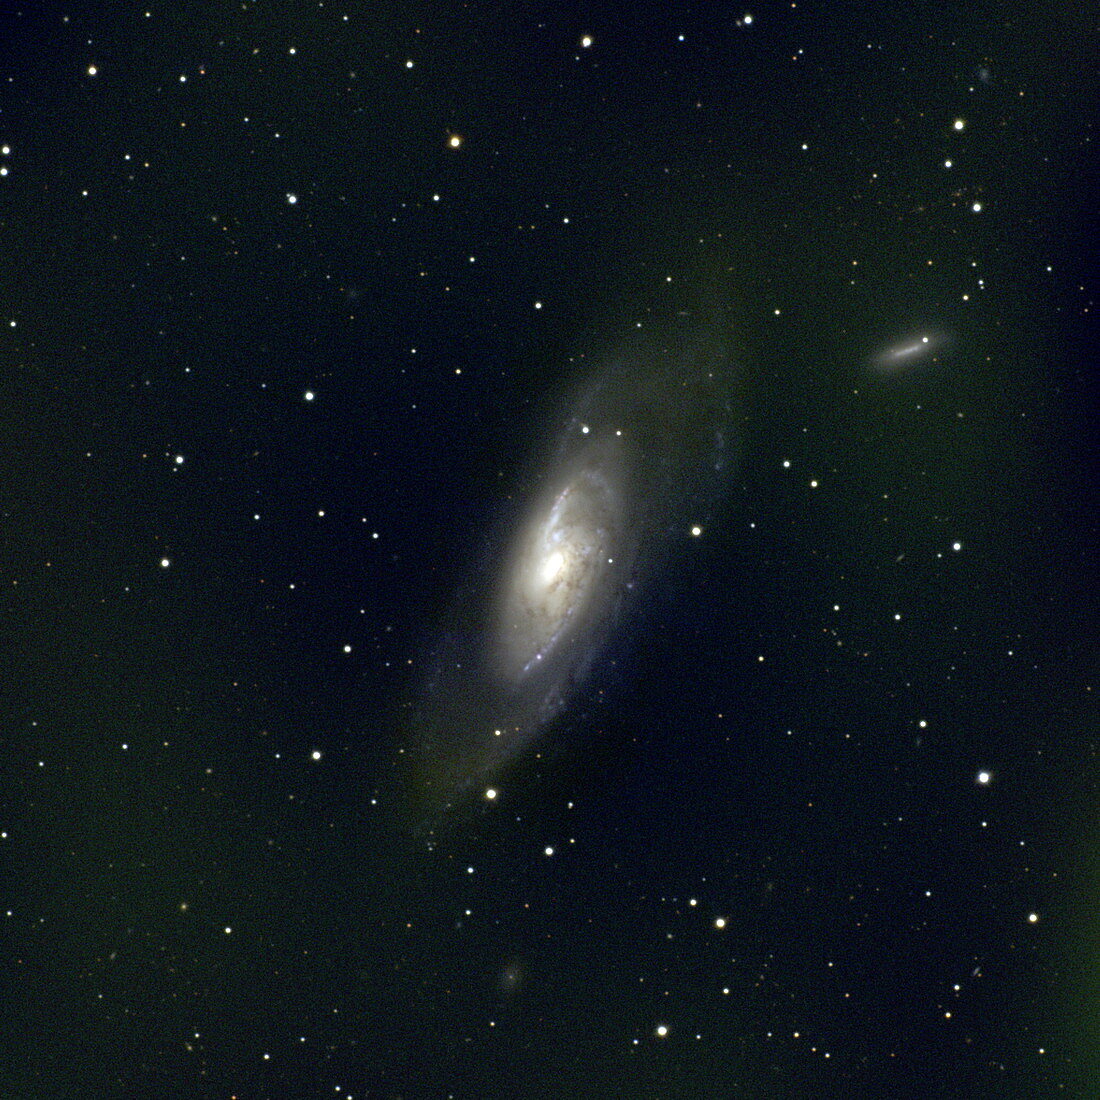 Spiral galaxy M106